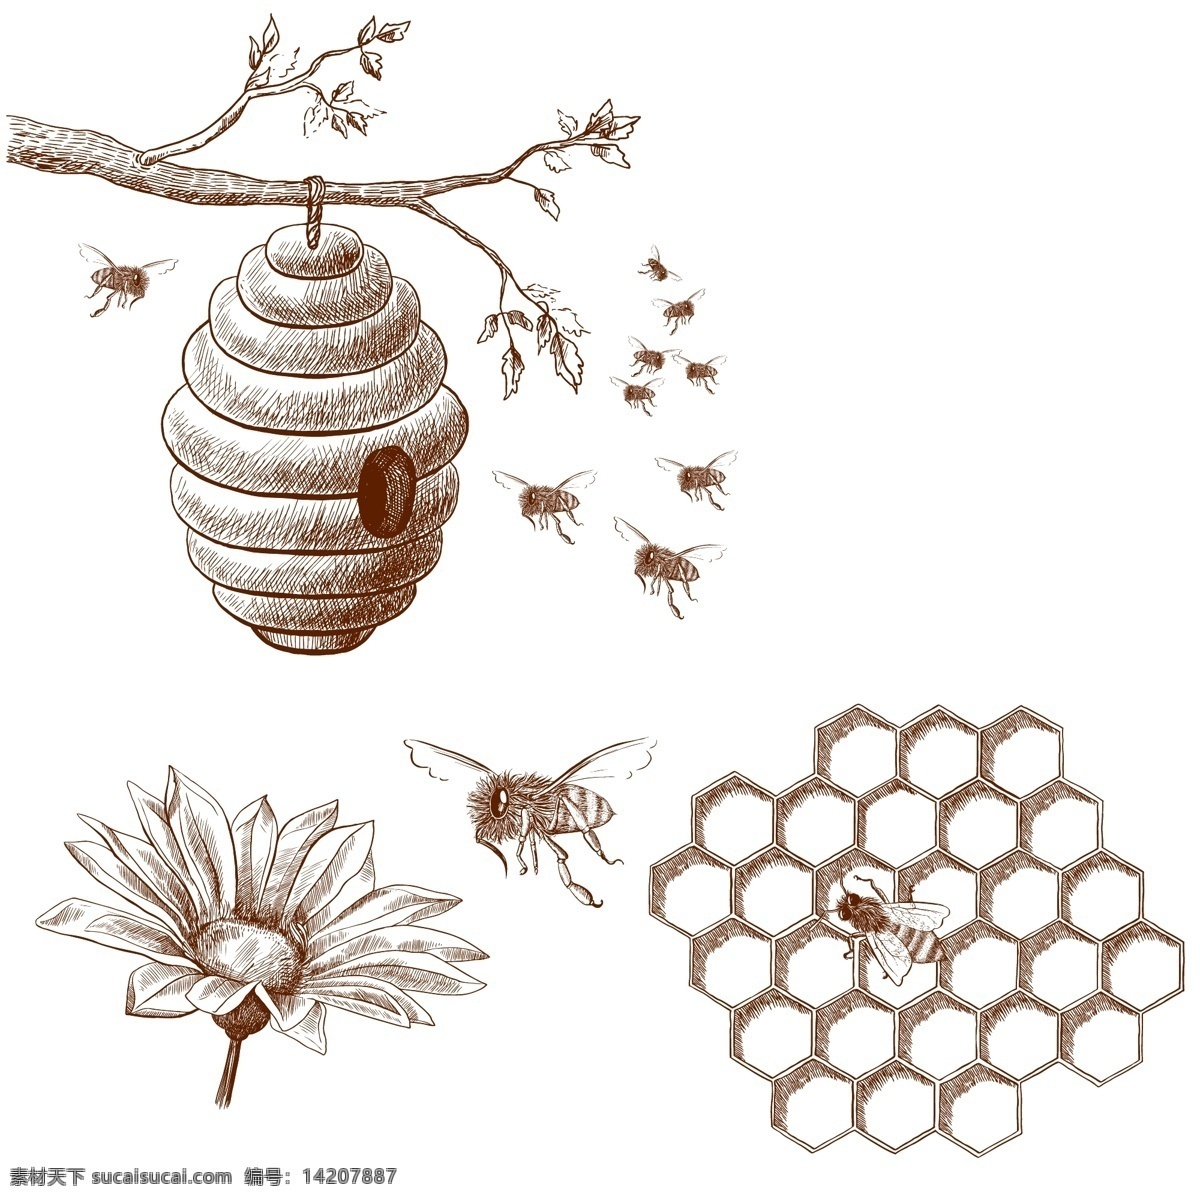 手绘 蜜蜂 蜂窝 蜂蜜 插图 蜂蜜海报 蜂蜜展板 蜂蜜广告 野生 蜂胶 天然蜂蜜 自然蜂蜜 蜂蜜宣单 蜂蜜画册 蜂蜜模板 蜂蜜制作 蜂蜜工艺 蜂蜜包装 蜂蜜展架 野生蜂蜜 蜂蜜插画 蜂蜜卡通 蜂蜜文化 蜂蜜图片 蜂蜜养殖 蜂蜜设计 蜂蜜产品 蜂蜜礼品盒 蜂蜜外盒包装 蜂蜜制作工艺 蜂蜜素材 蜜蜂养殖 蜂王浆 临时